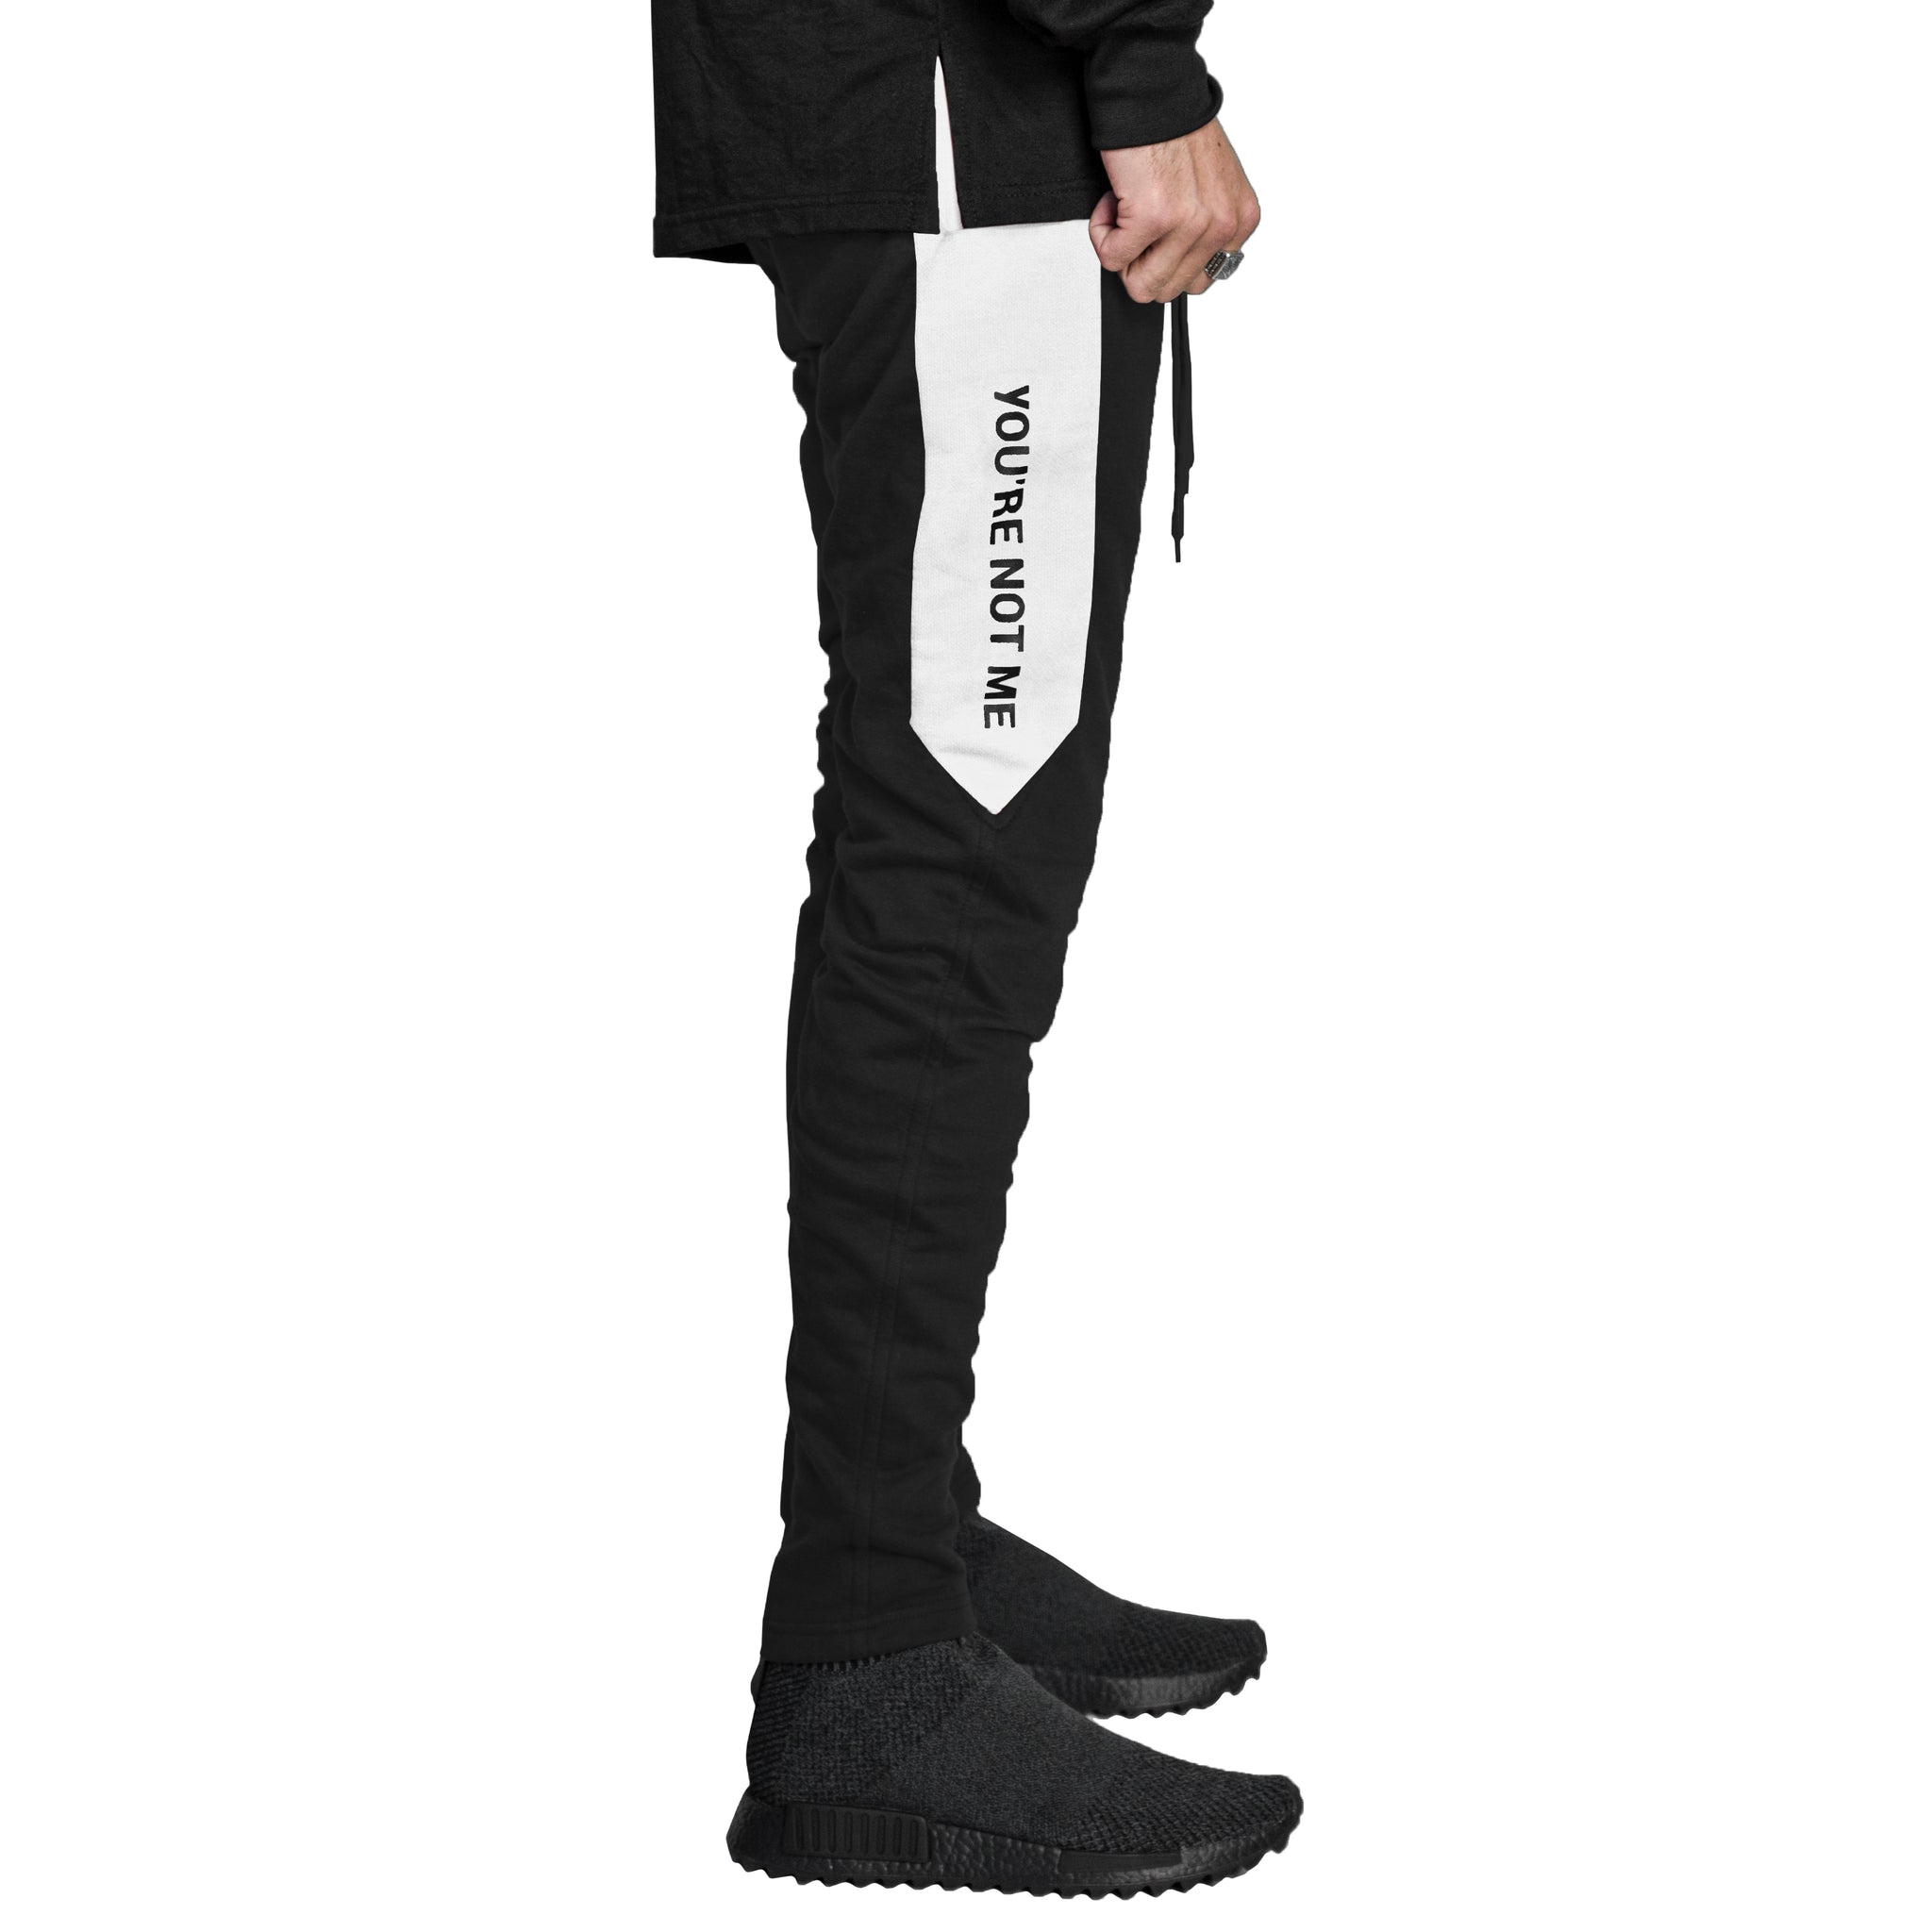 Pantalones deportivos con cremallera YNM: Negro/Blanco